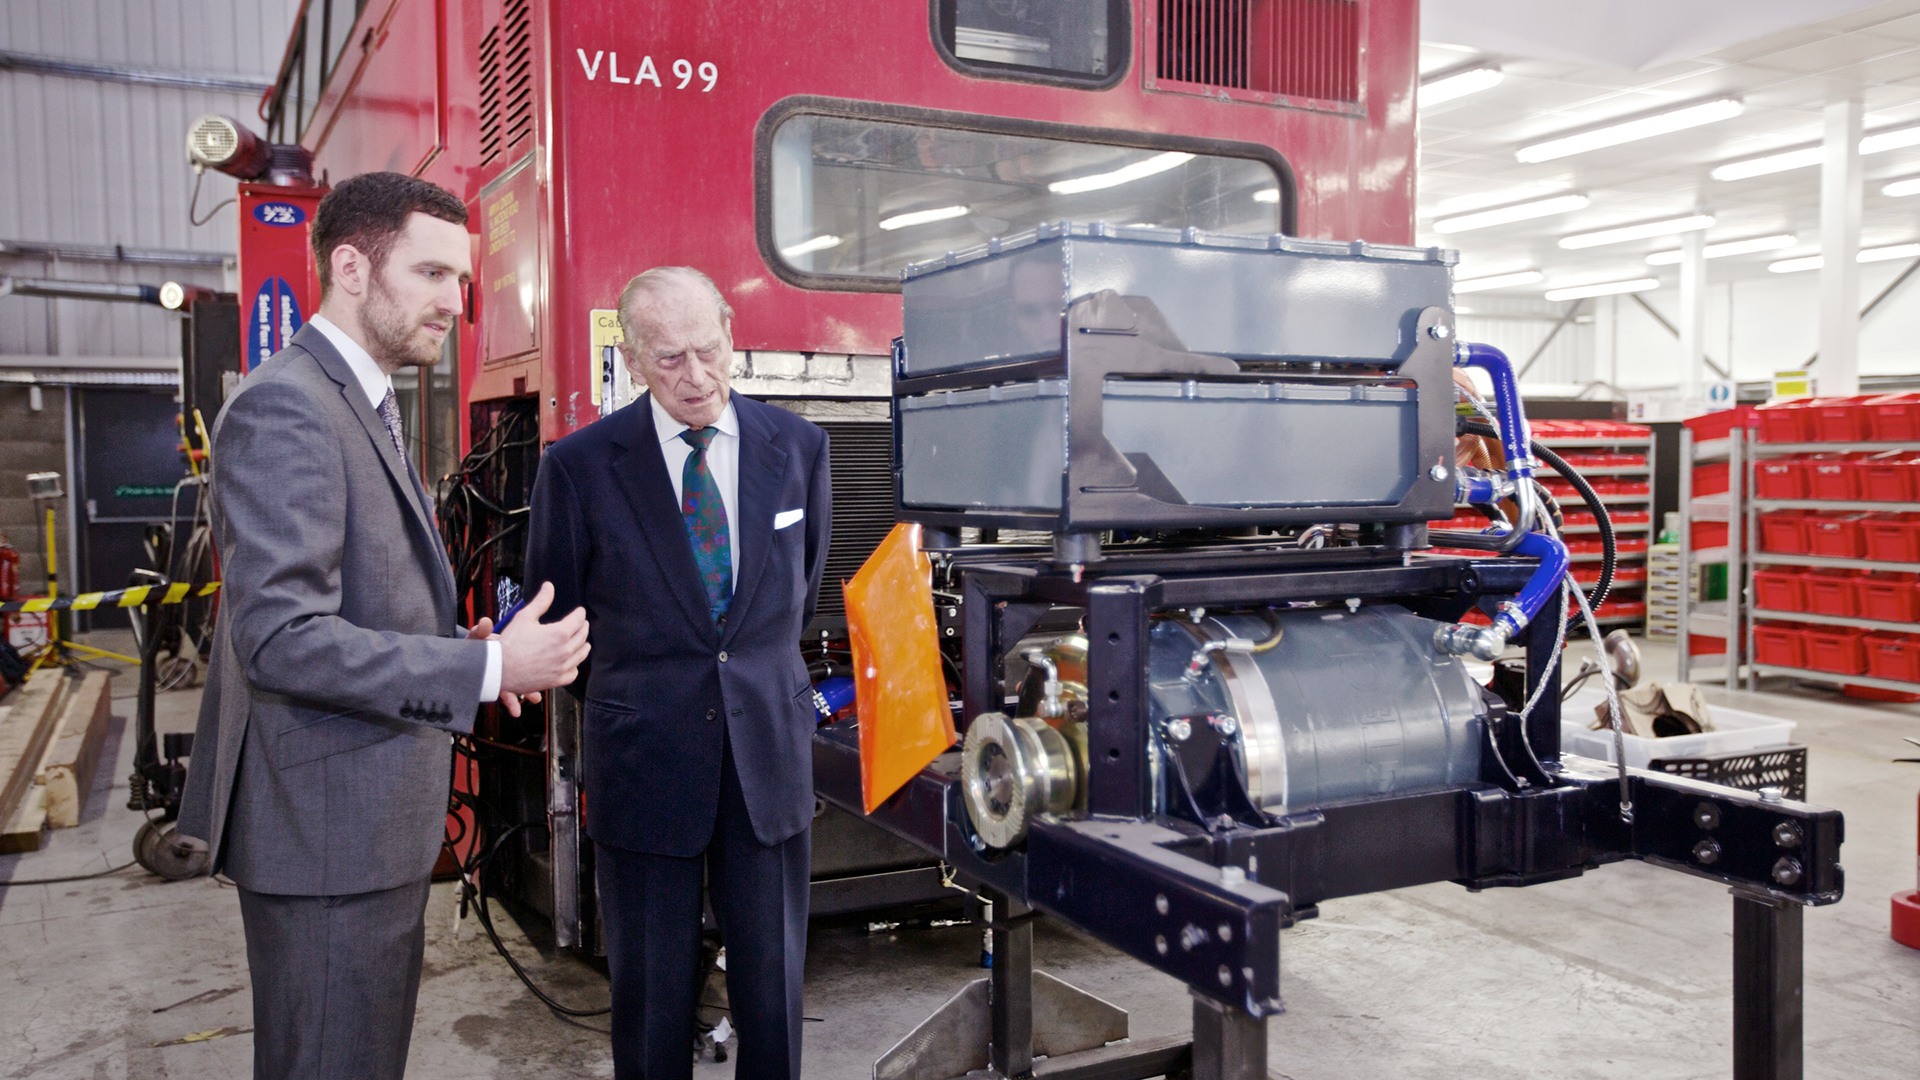 HRH Duke of Edinburgh visit to Vantage Power.